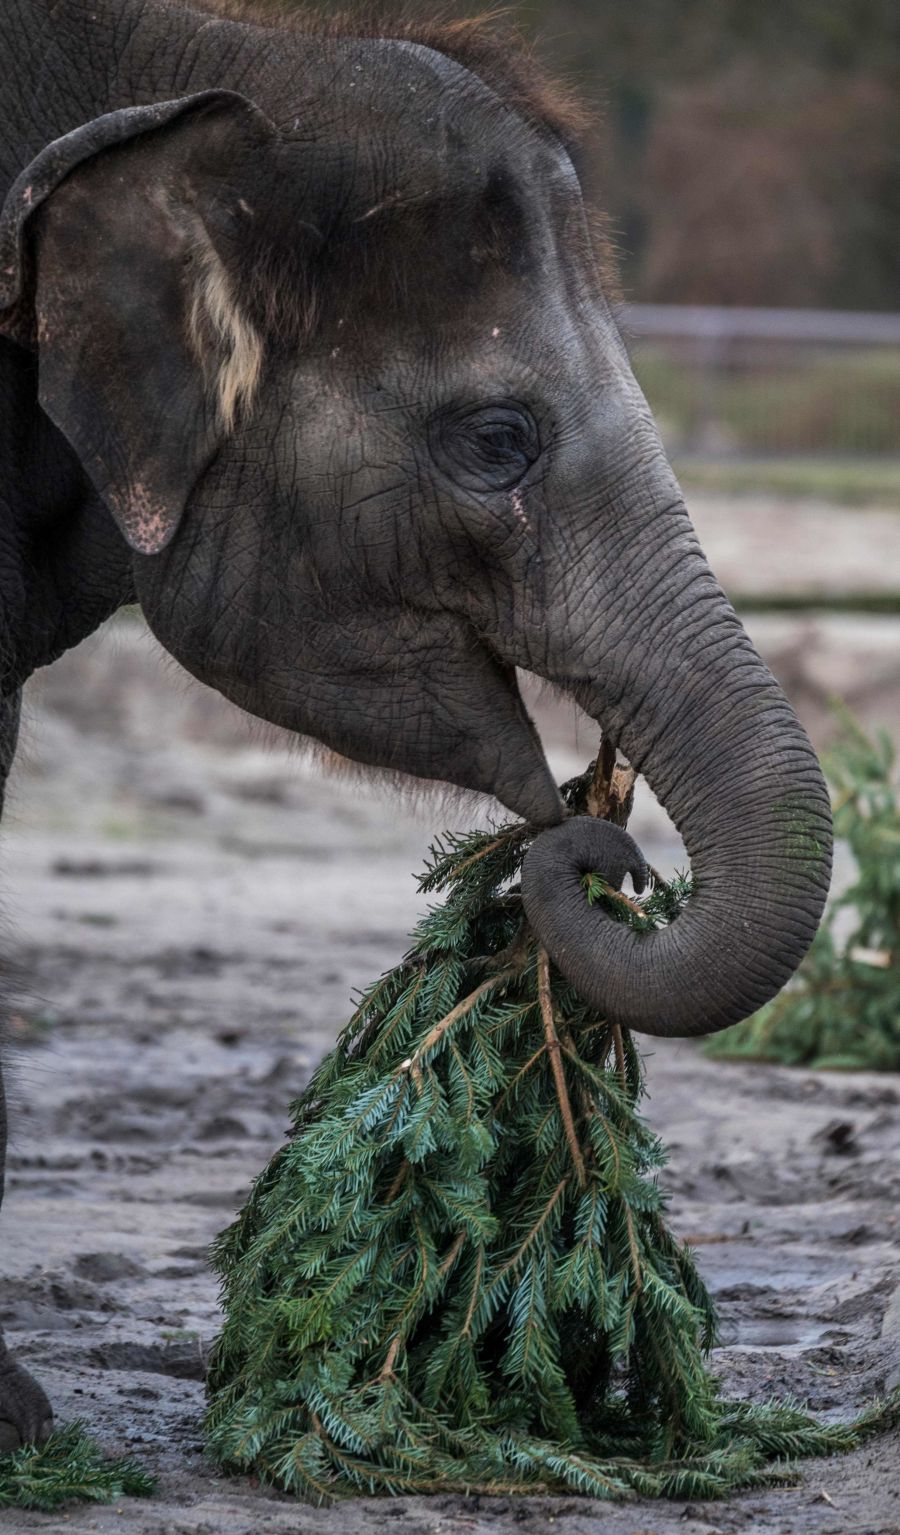 Los árboles de Navidad son aprovechados como comida para animales. Es el caso del zoo de Berlín, que ha facilitado estas preciosas imágenes de sus elefantes jugando y comiendo estos árboles que hace poco decoraban los hogares de los berlineses.